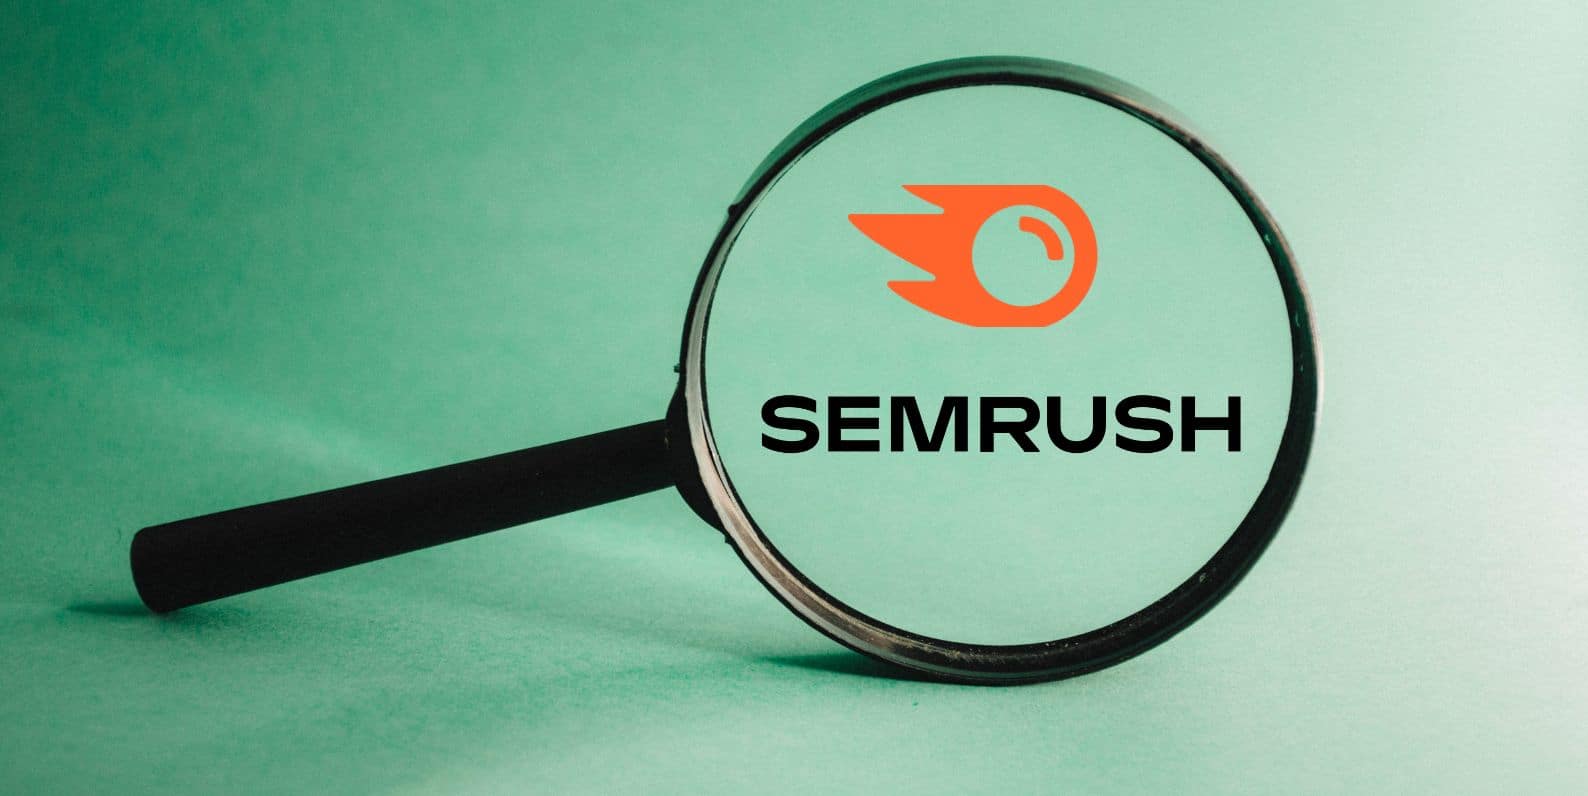 Semrush Tutorial and Review